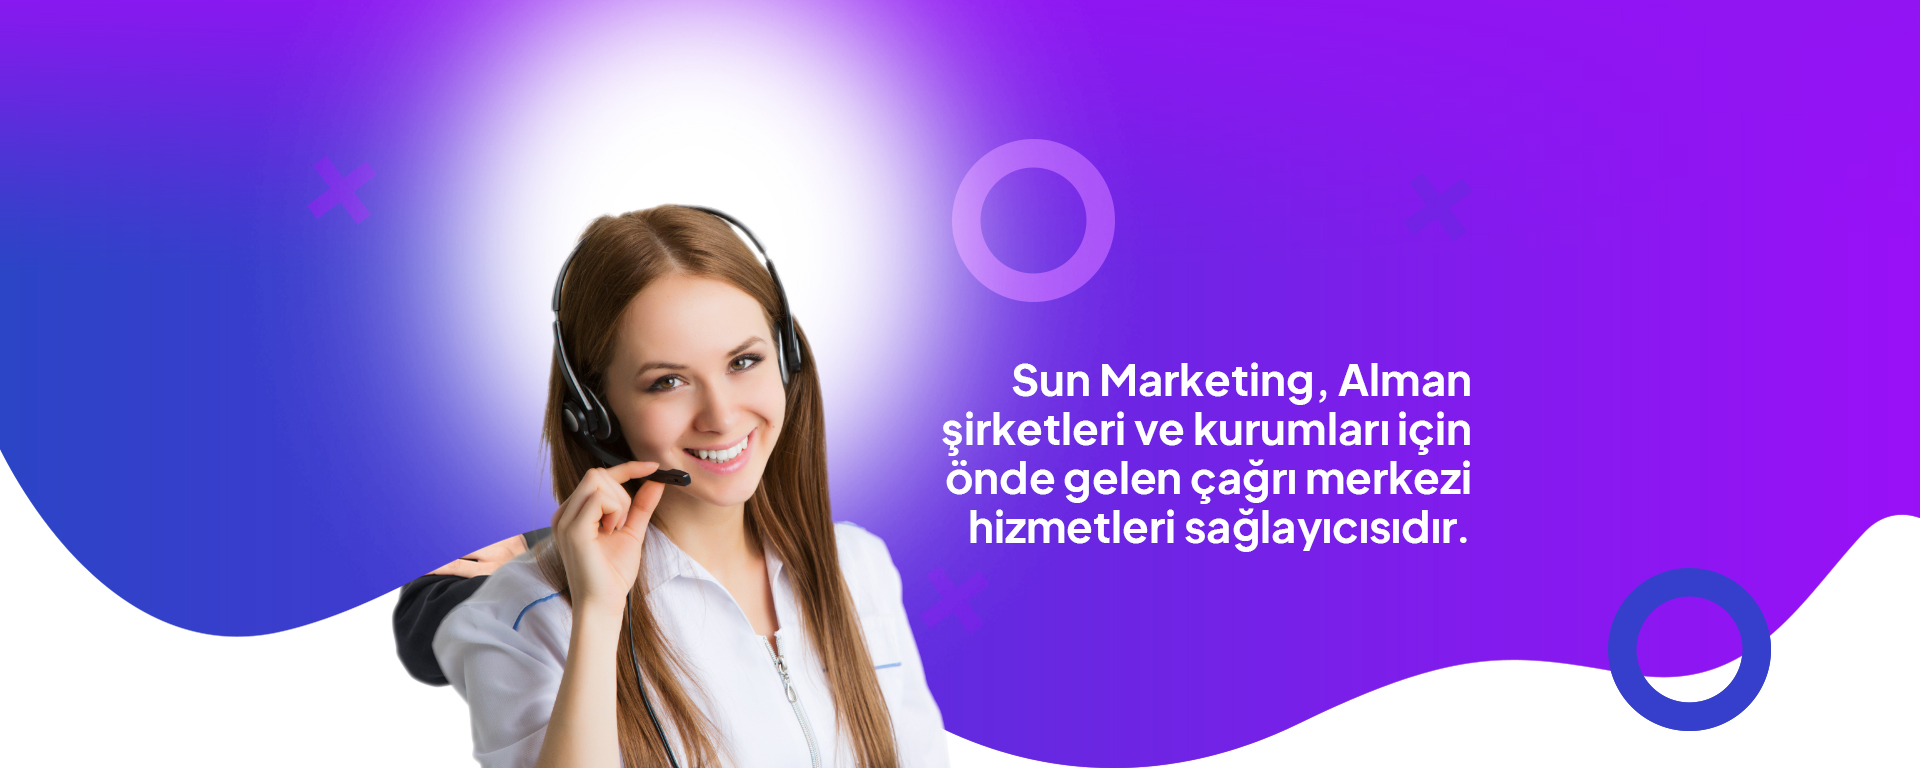 Sun Marketing, Alman şirketleri ve kurumları için önde gelen çağrı merkezi hizmetleri sağlayıcısıdır.